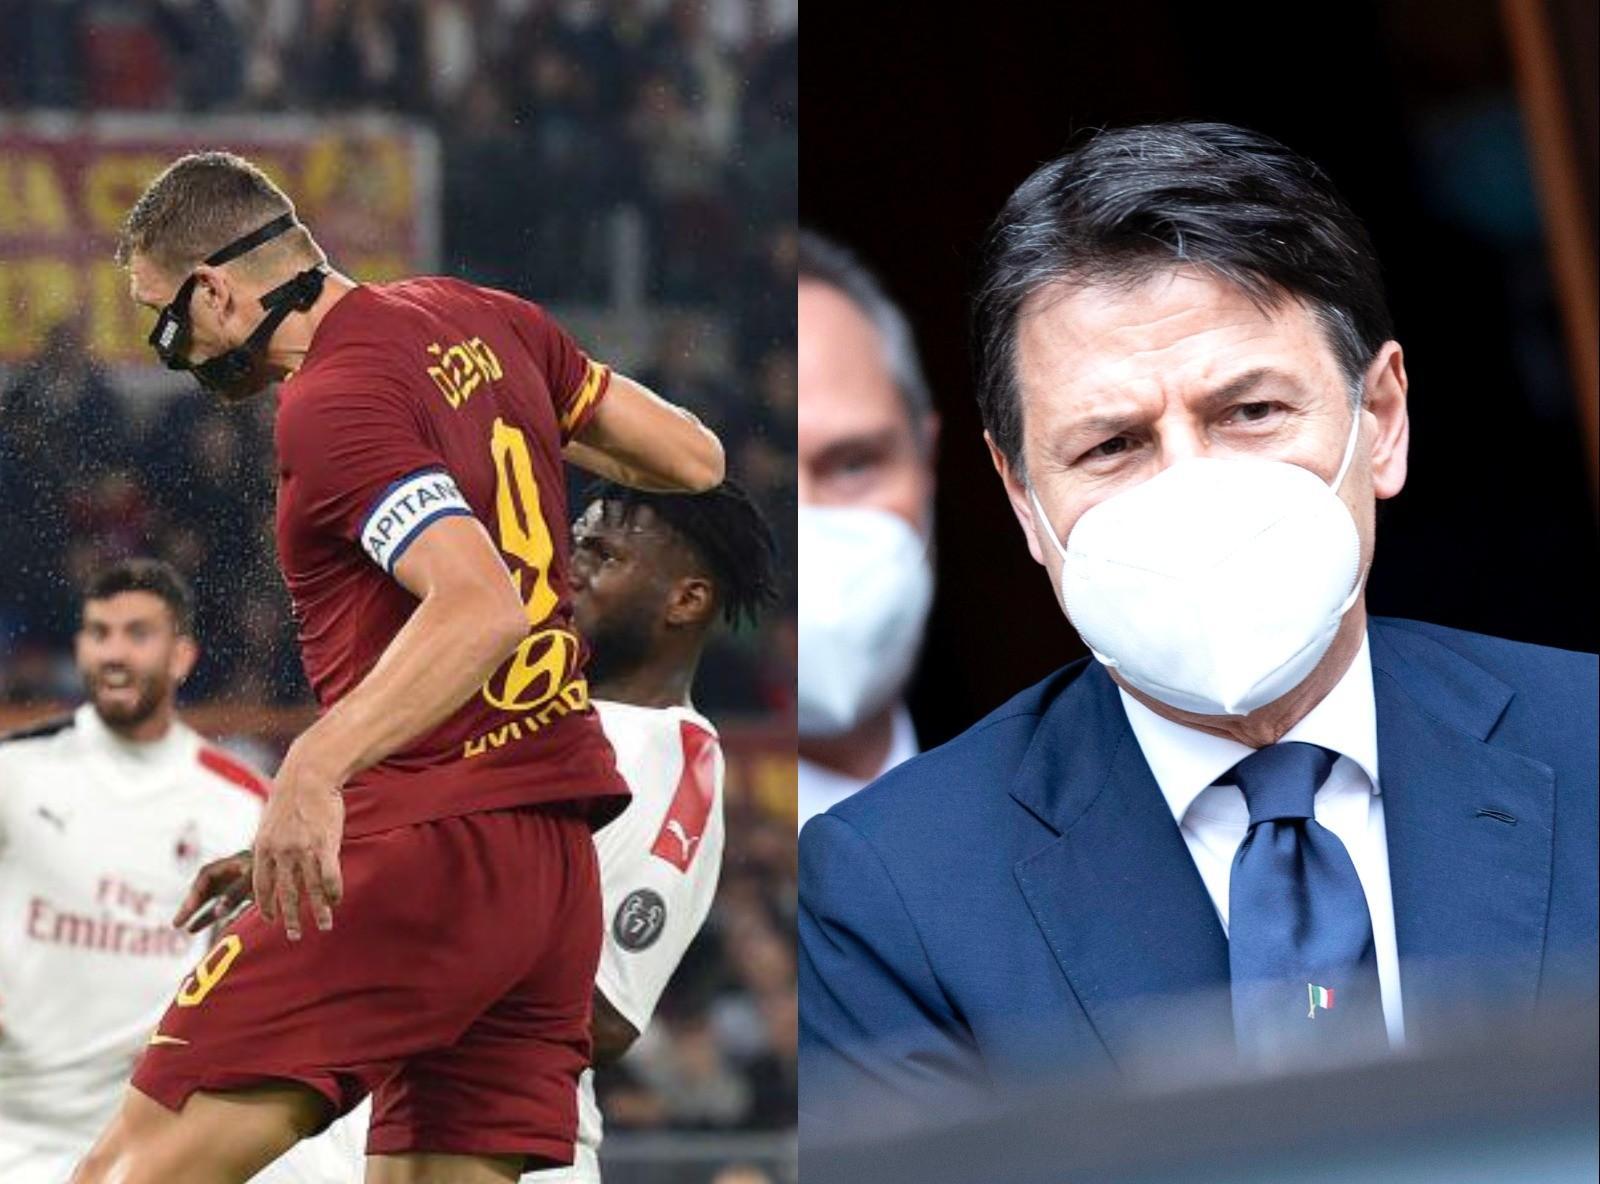 Serie A, il ballo in mascherina. I presidenti sperano in un protocollo meno rigido